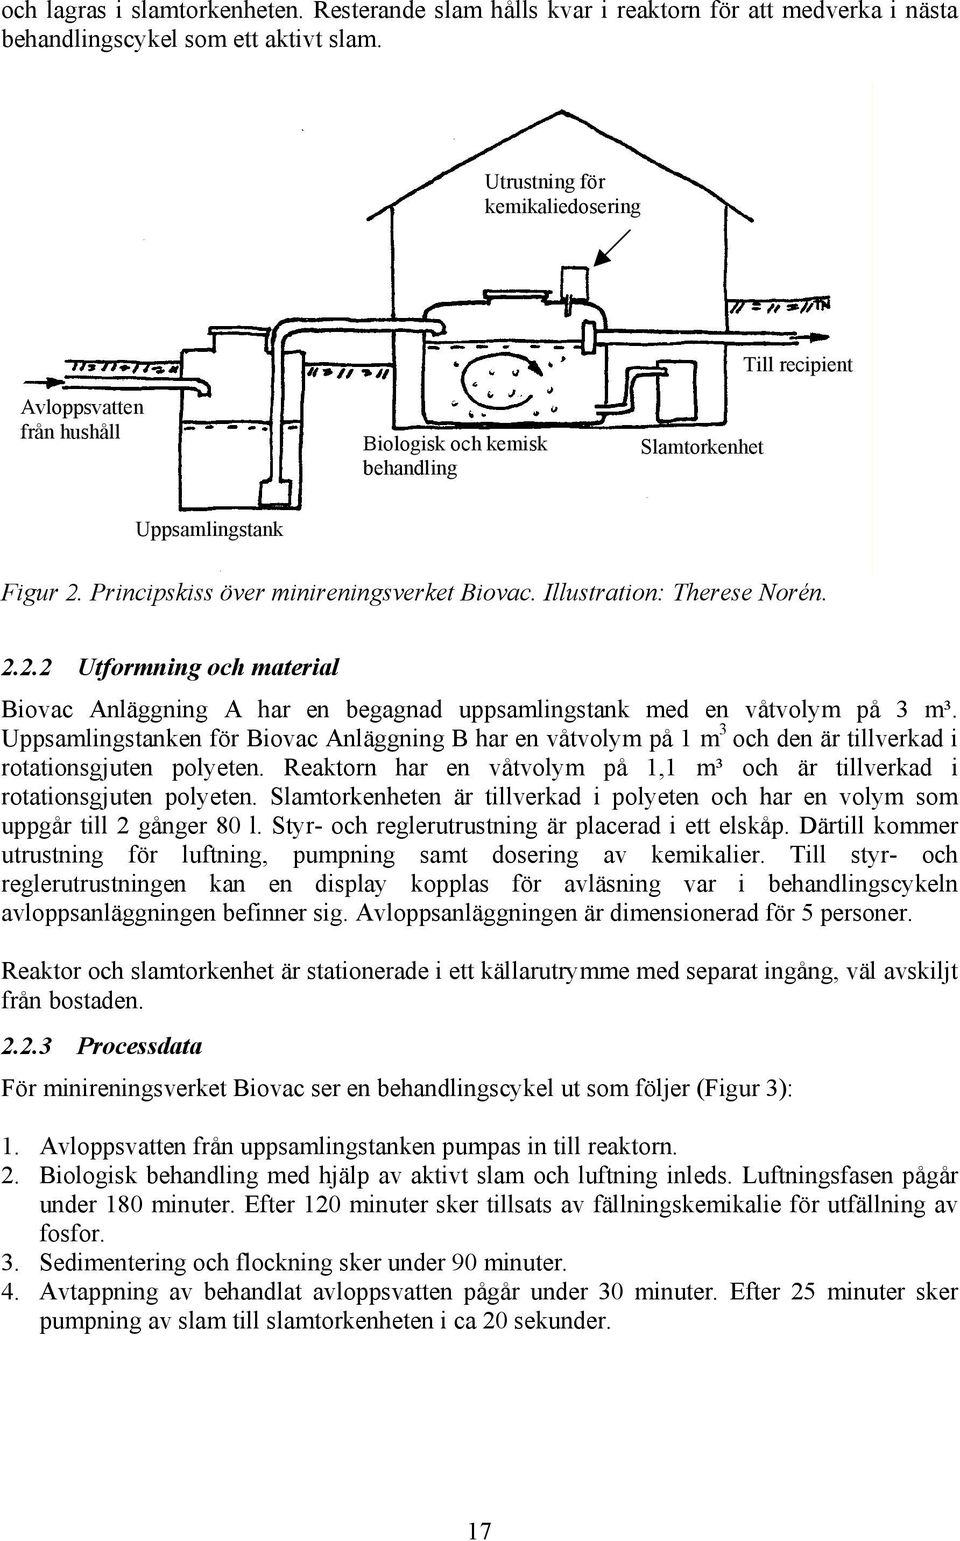 Illustration: Therese Norén. 2.2.2 Utformning och material Biovac Anläggning A har en begagnad uppsamlingstank med en våtvolym på 3 m³.